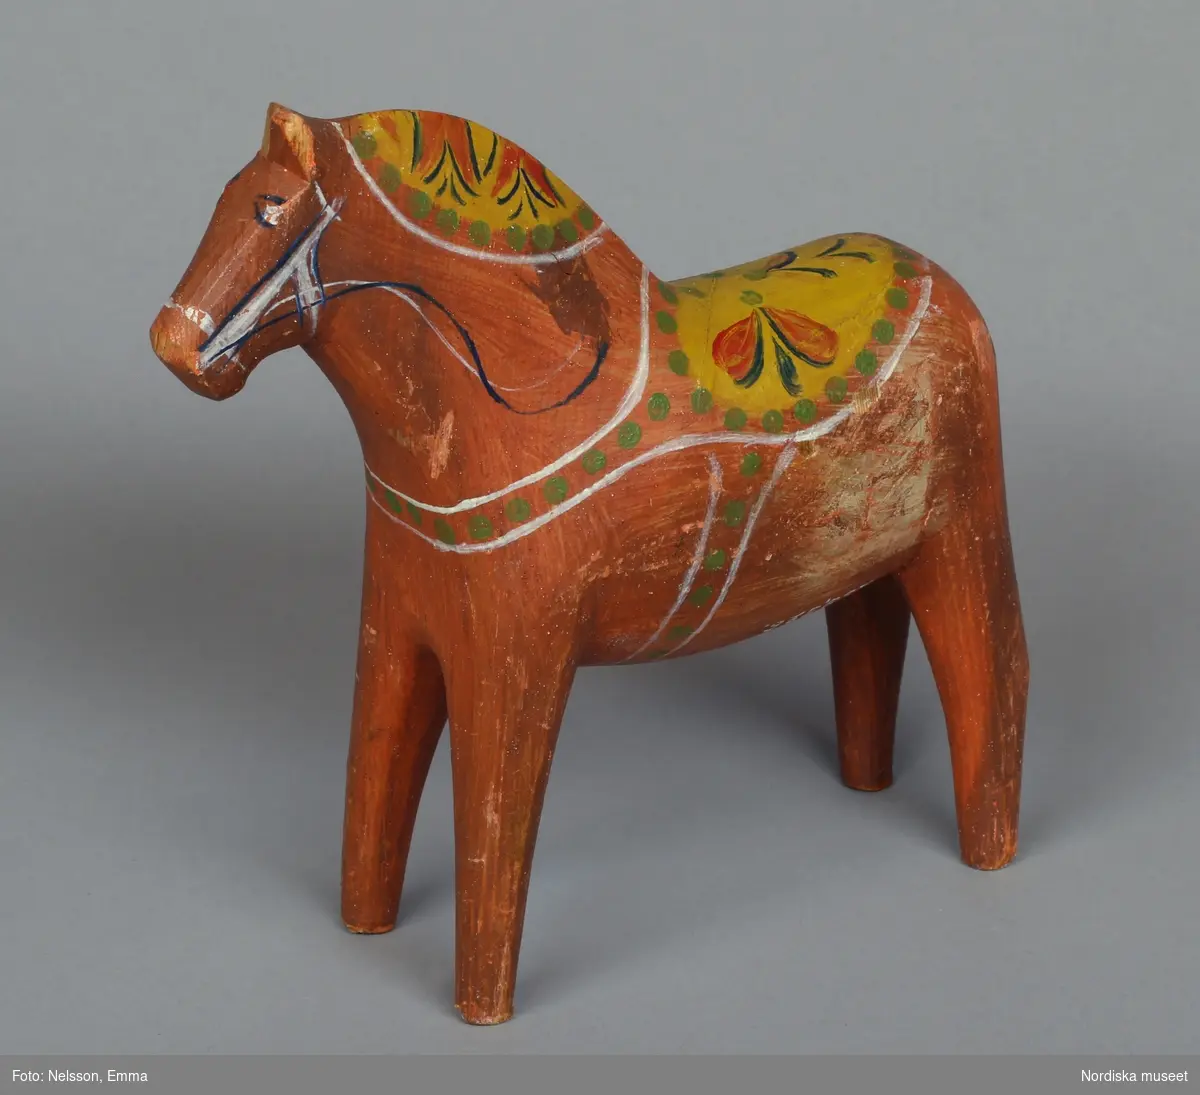 Häst, dalahäst, rödmålad. med krusning i gult, vitt, grönt och rött. På buken inristat: "LENNART / S. UTSTÄLLNING / 1930".
[BN 1966]